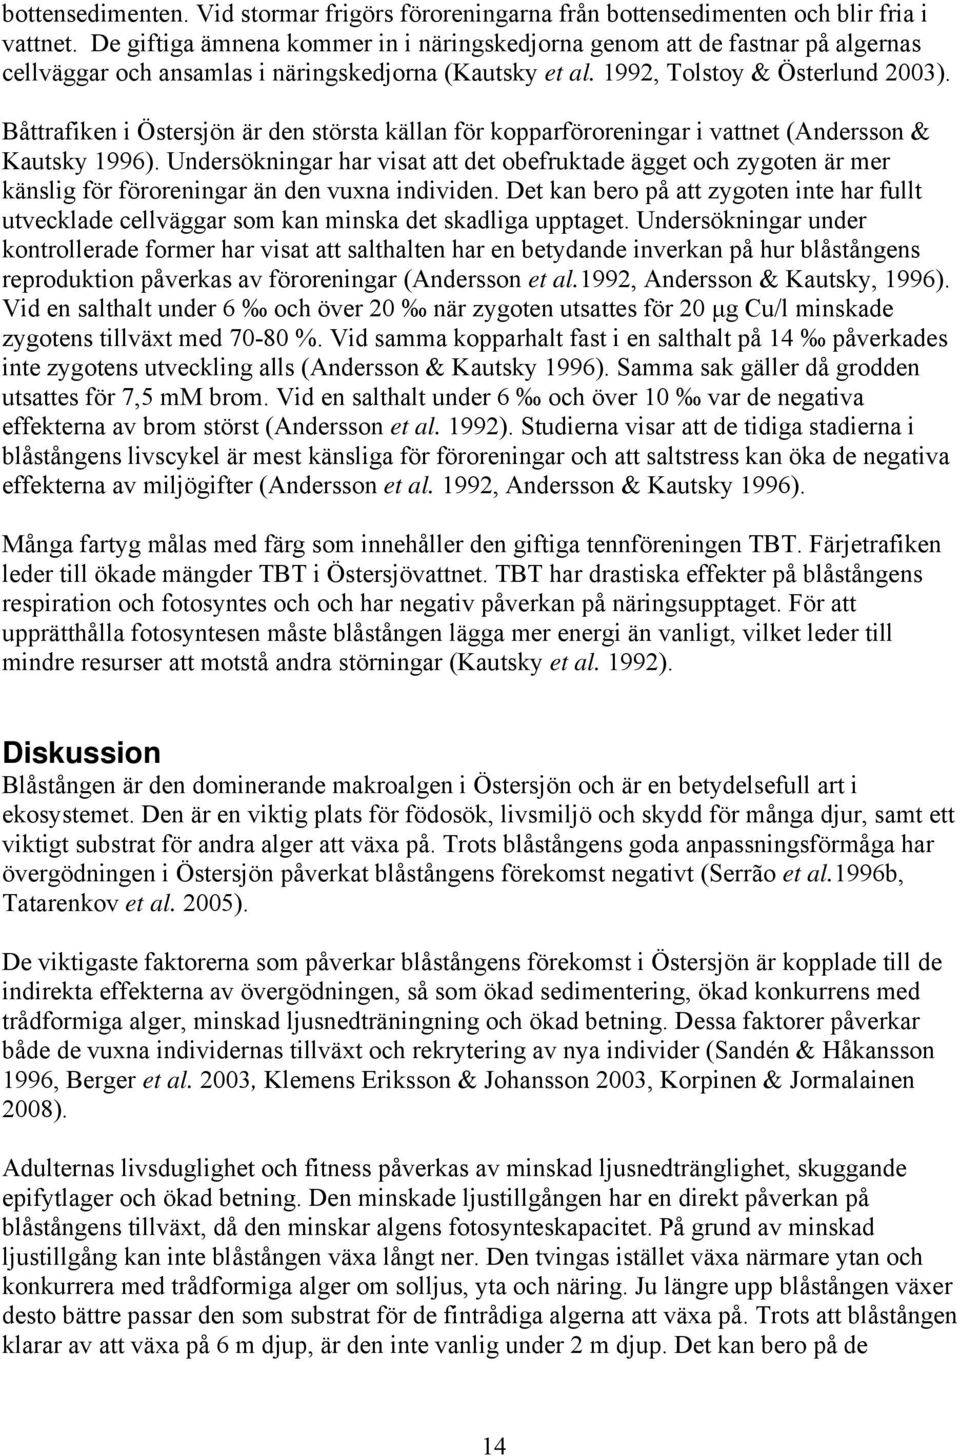 Båttrafiken i Östersjön är den största källan för kopparföroreningar i vattnet (Andersson & Kautsky 1996).